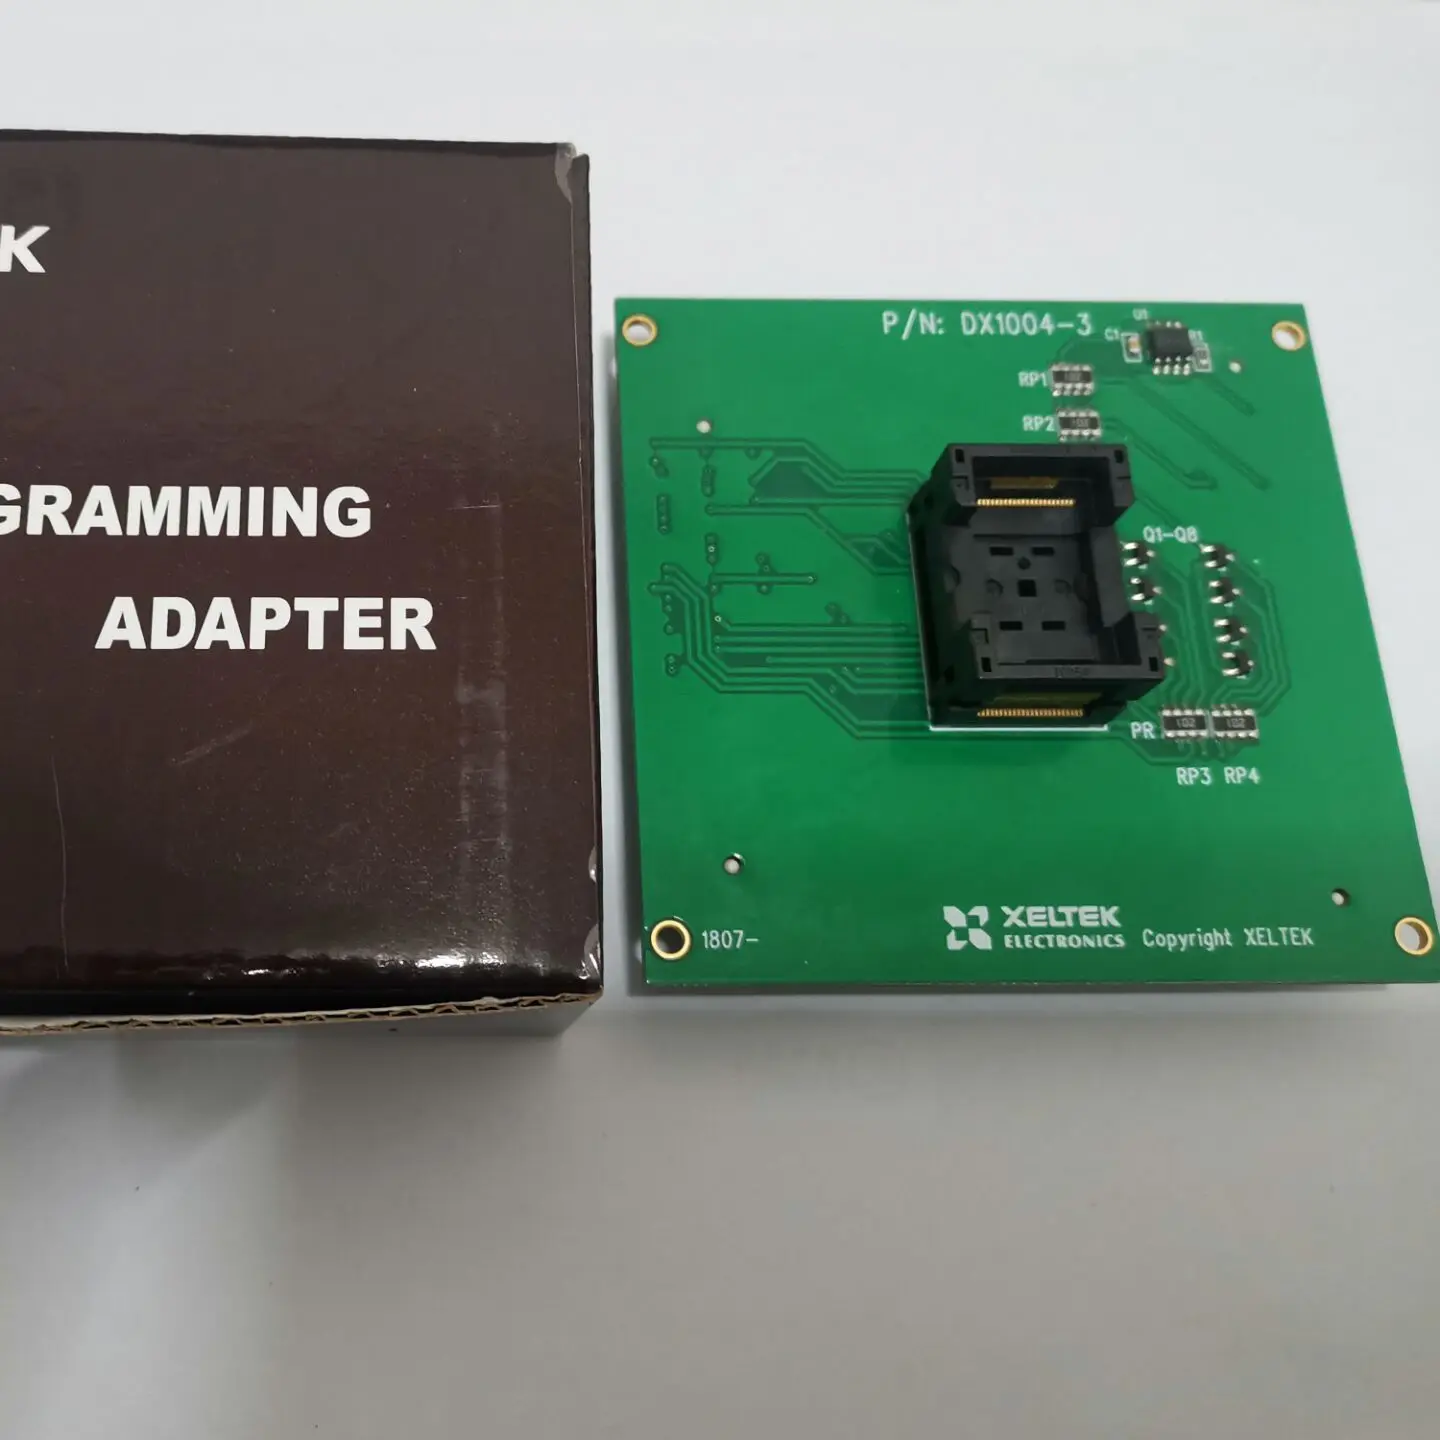 Новый XELTEK адаптер тестовое гнездо CX1004-3 / DX1004-3 TSOP48 | Инструменты